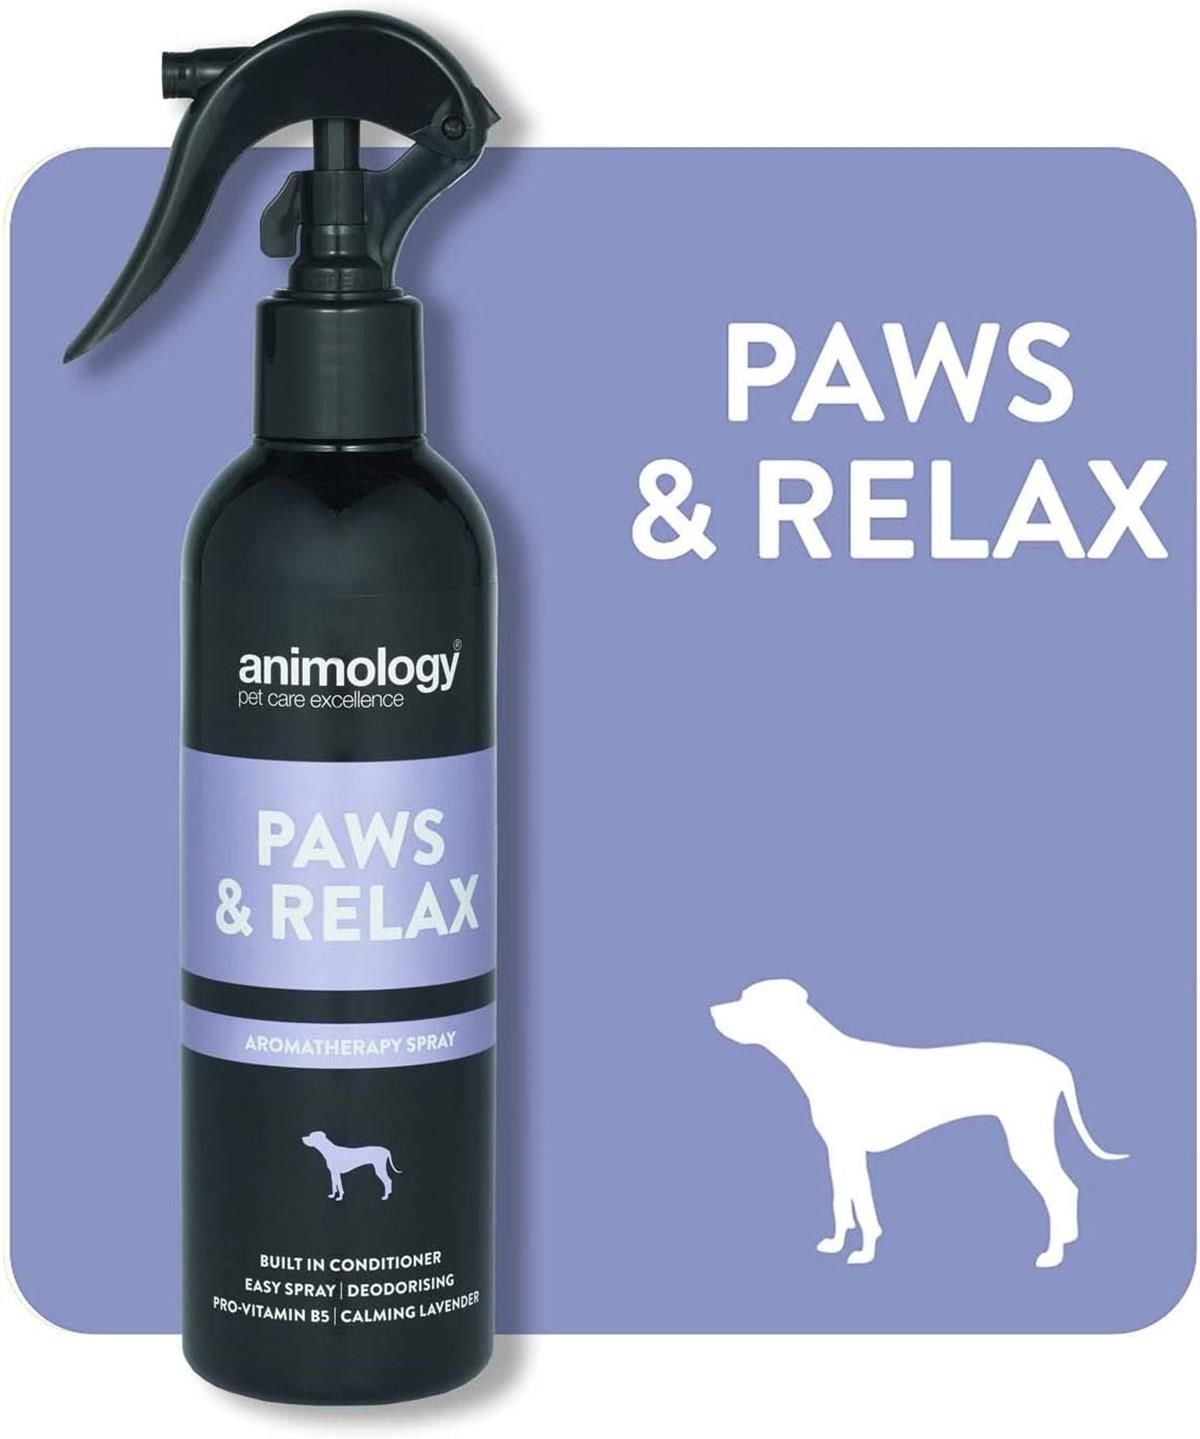 Paws Relax Aromatherapy Rahatlatıcı Köpek Tüy Bakım Spreyi 250 ml